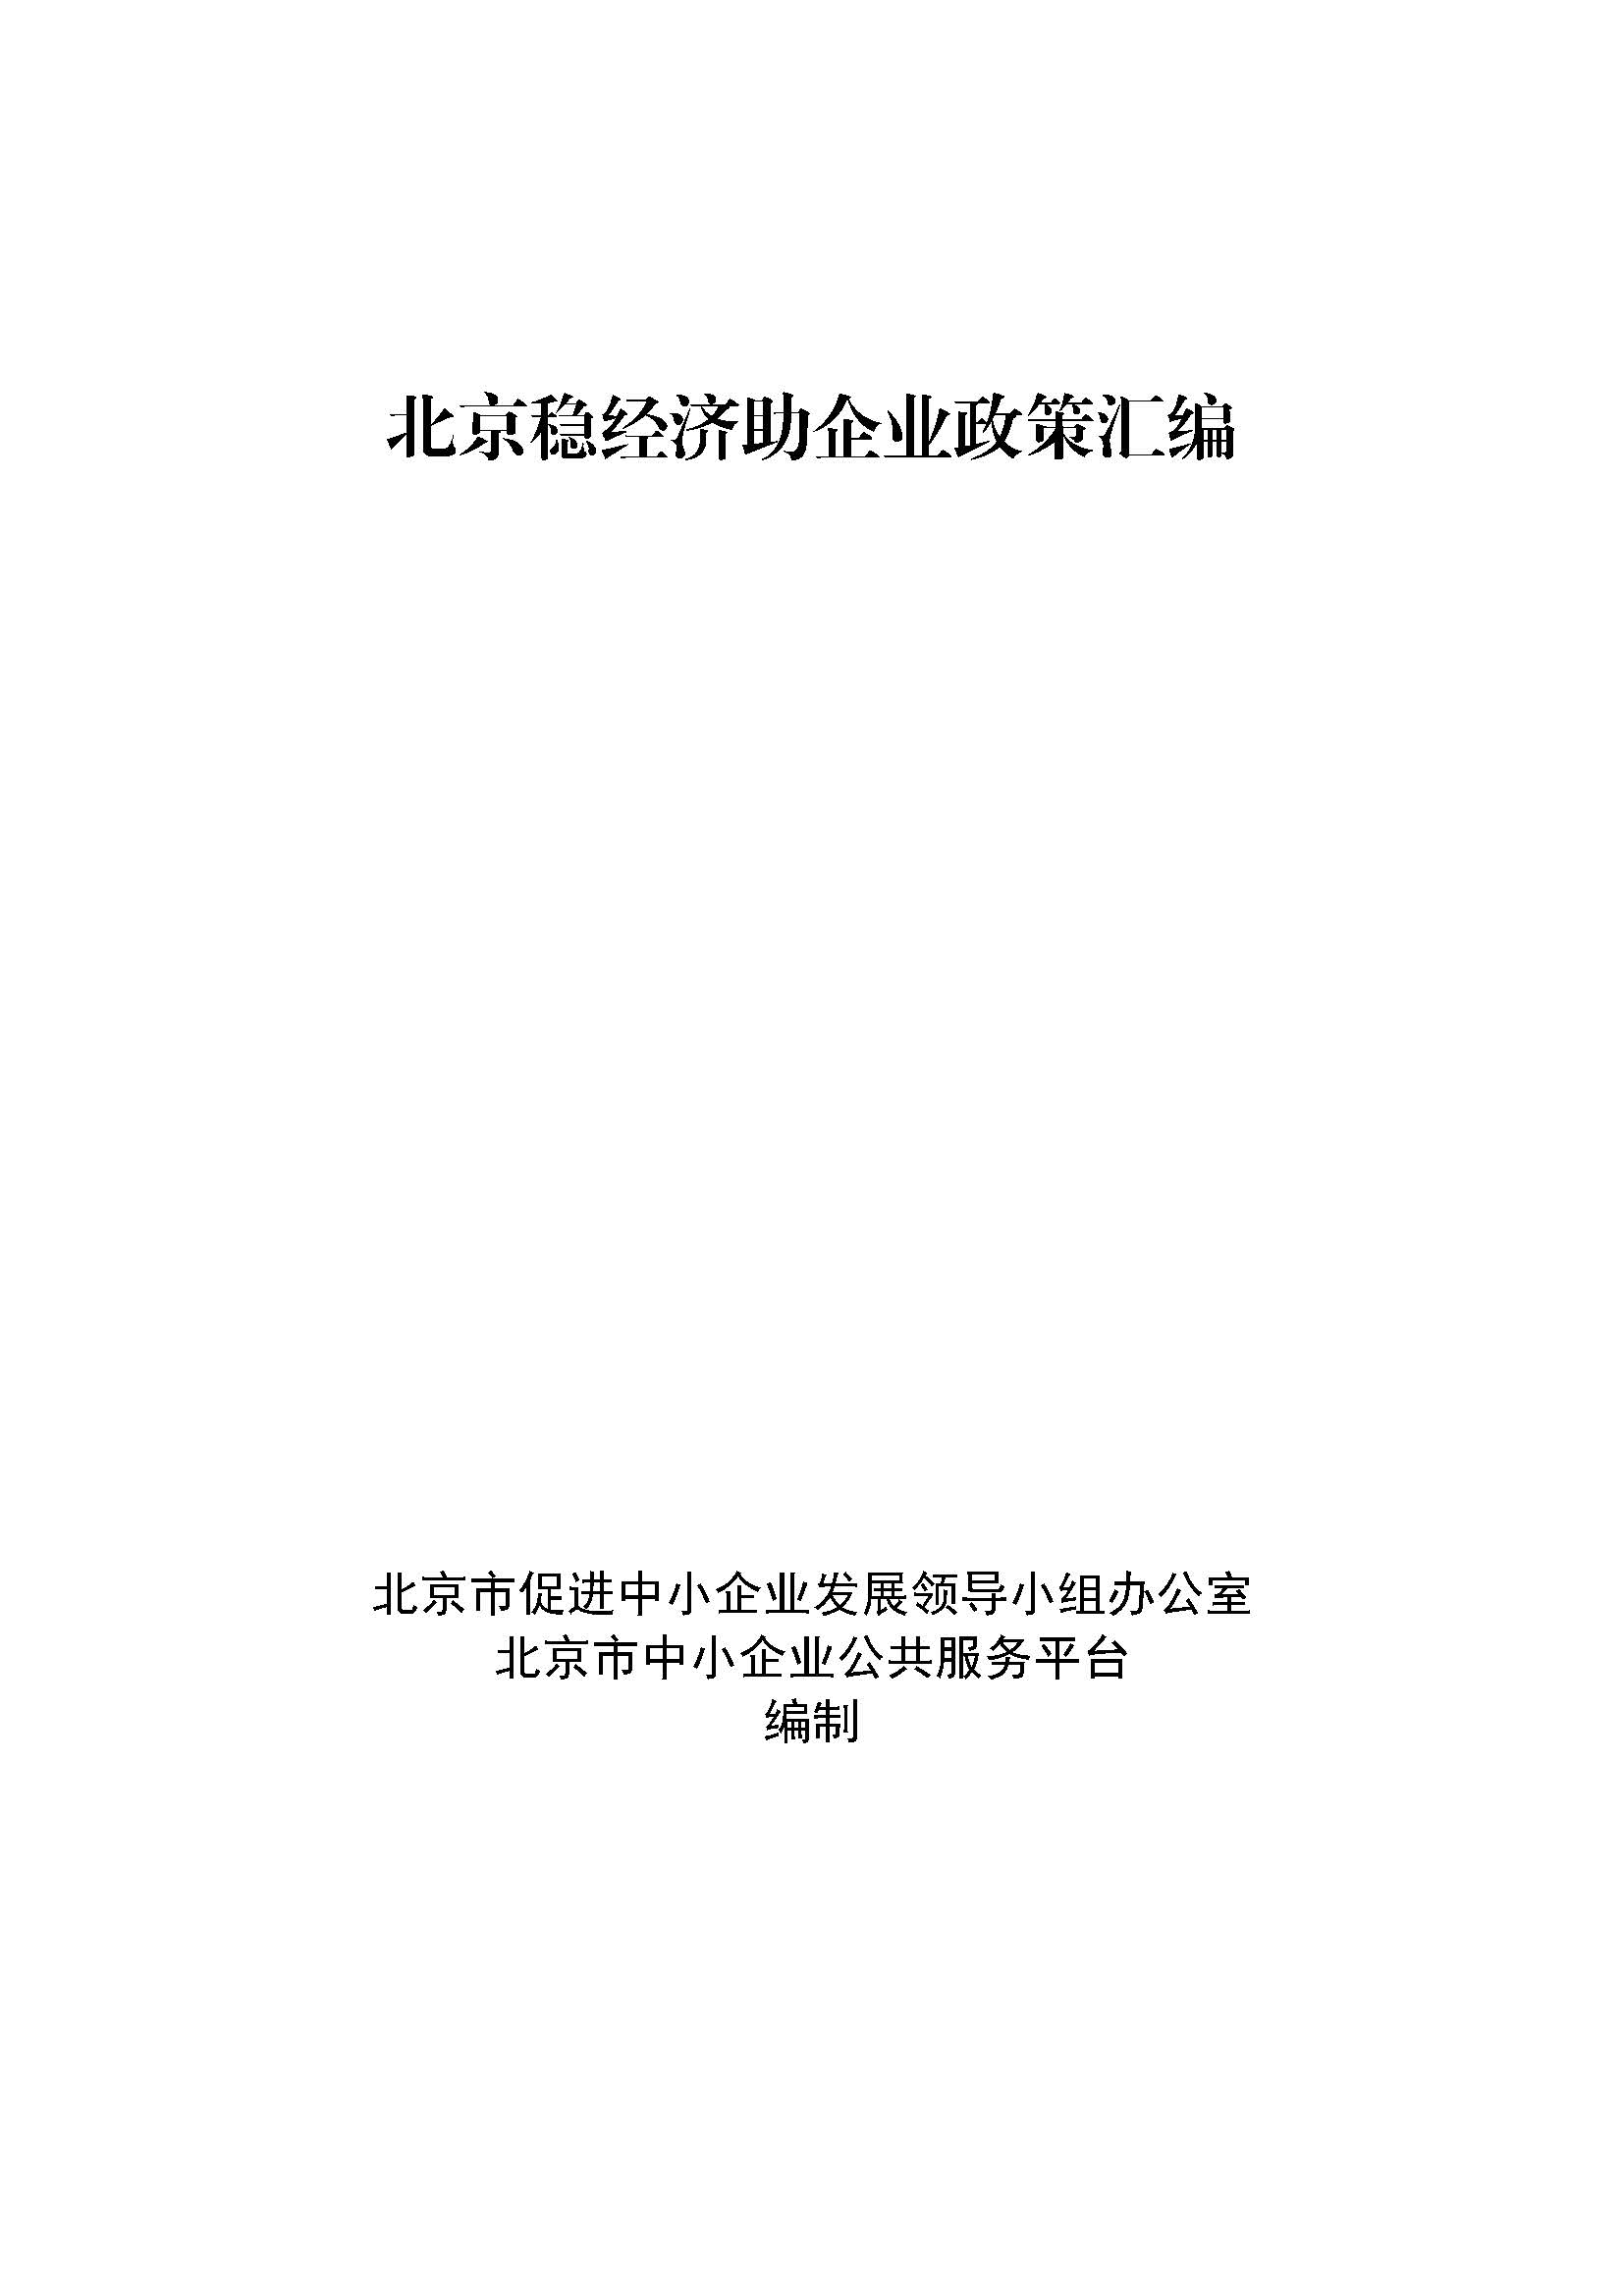 北京稳经济助企业政策汇编_页面_001.jpg